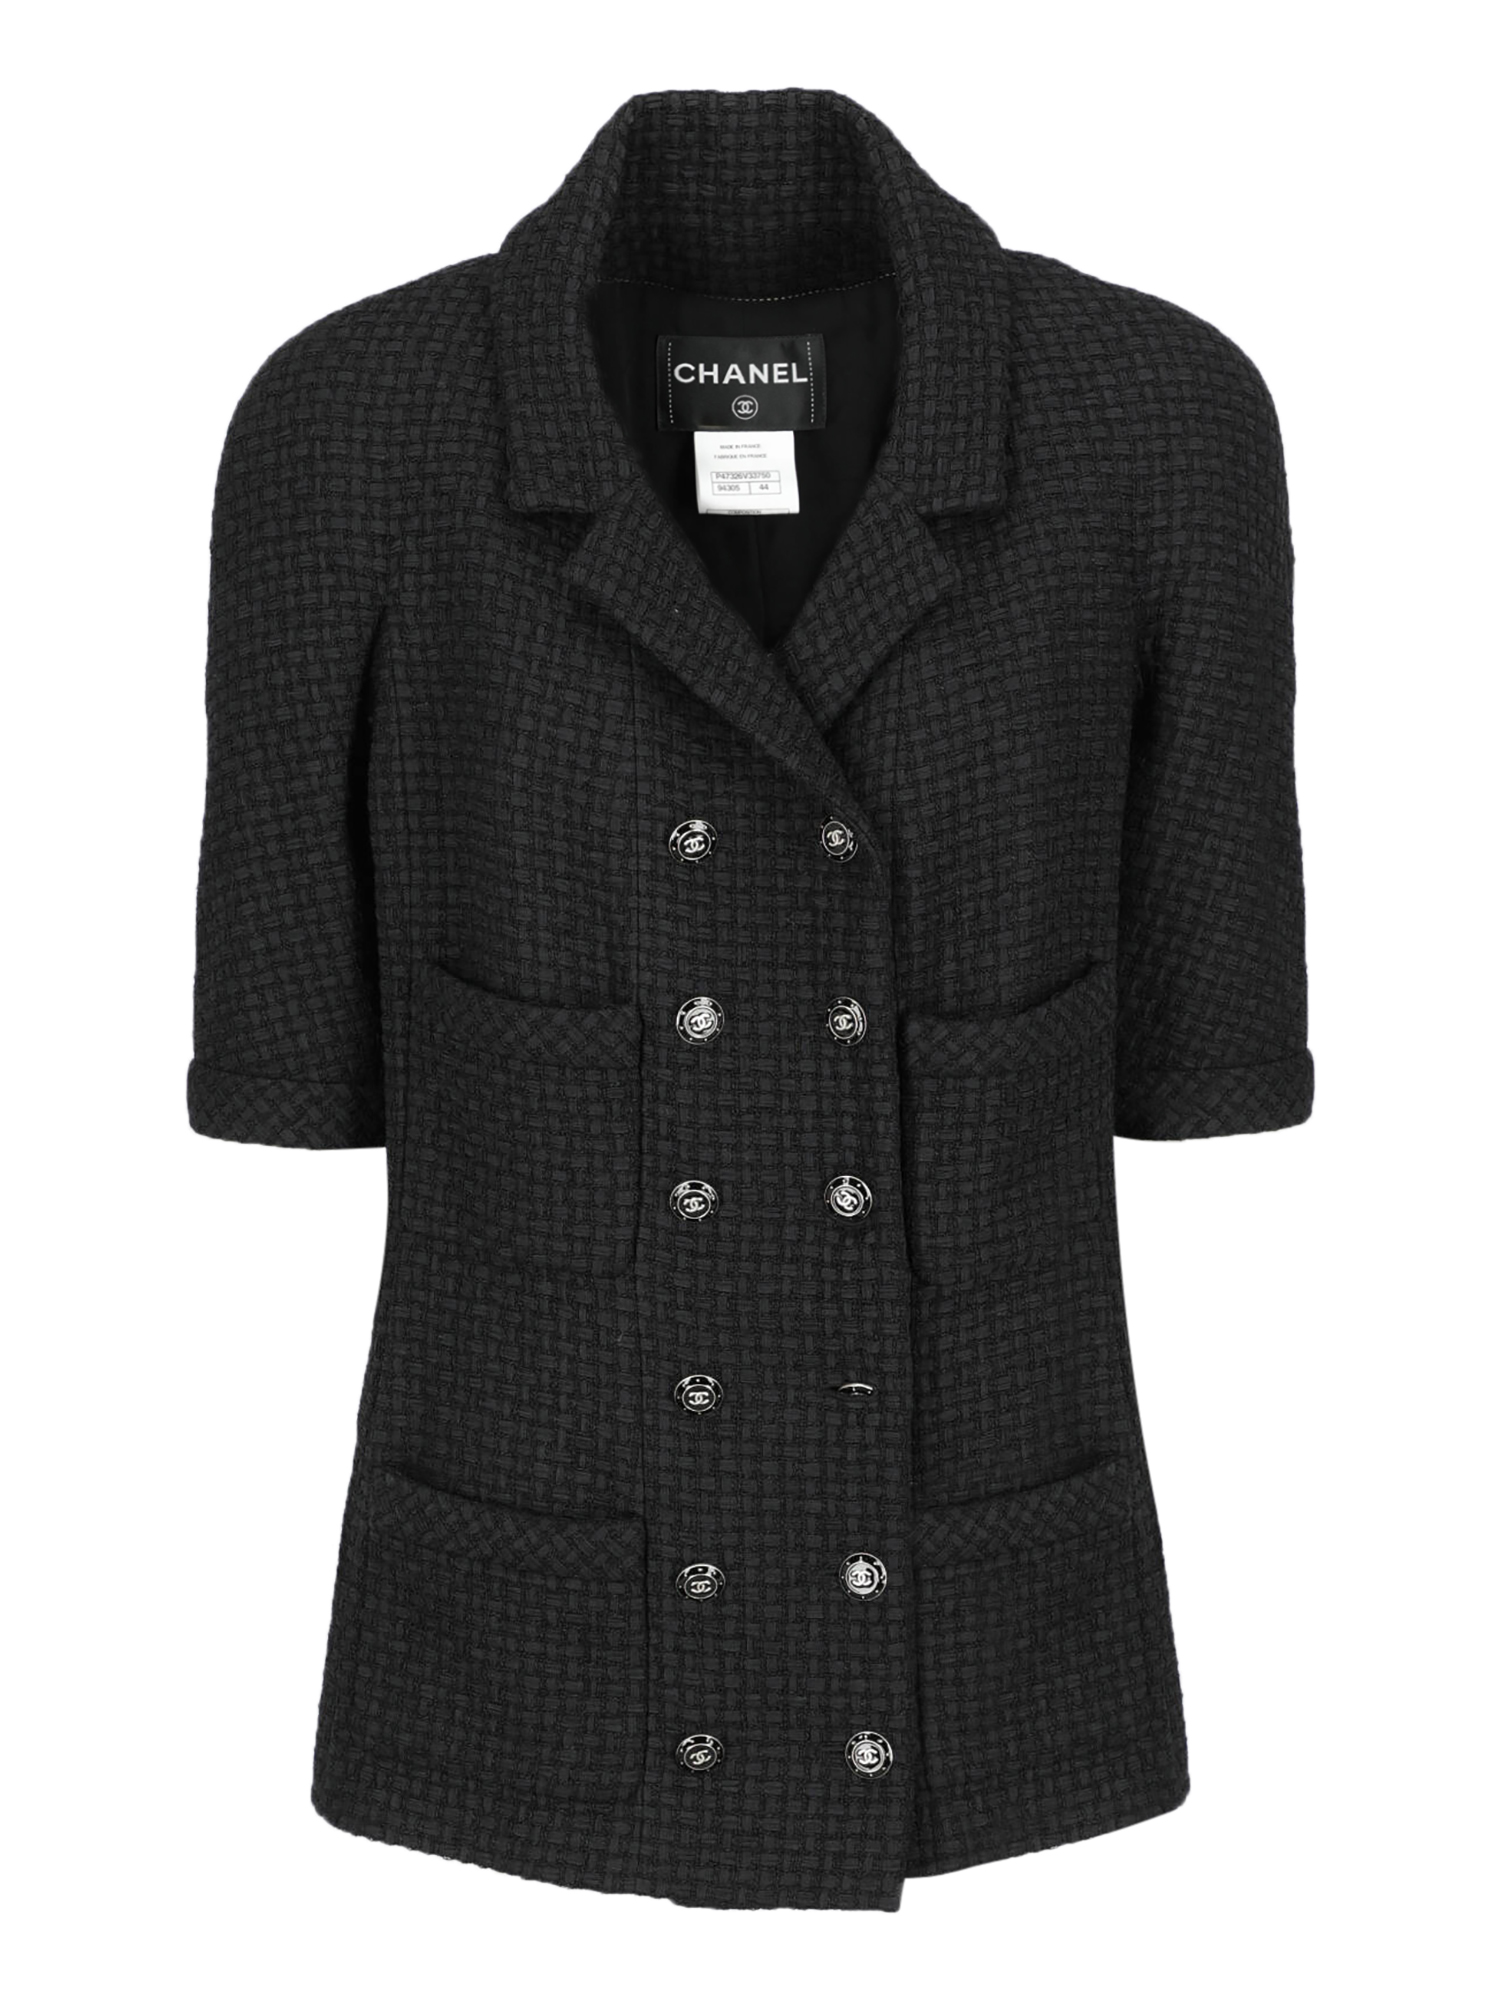 Vestes Pour Femme - Chanel - En Synthetic Fibers Black - Taille:  -